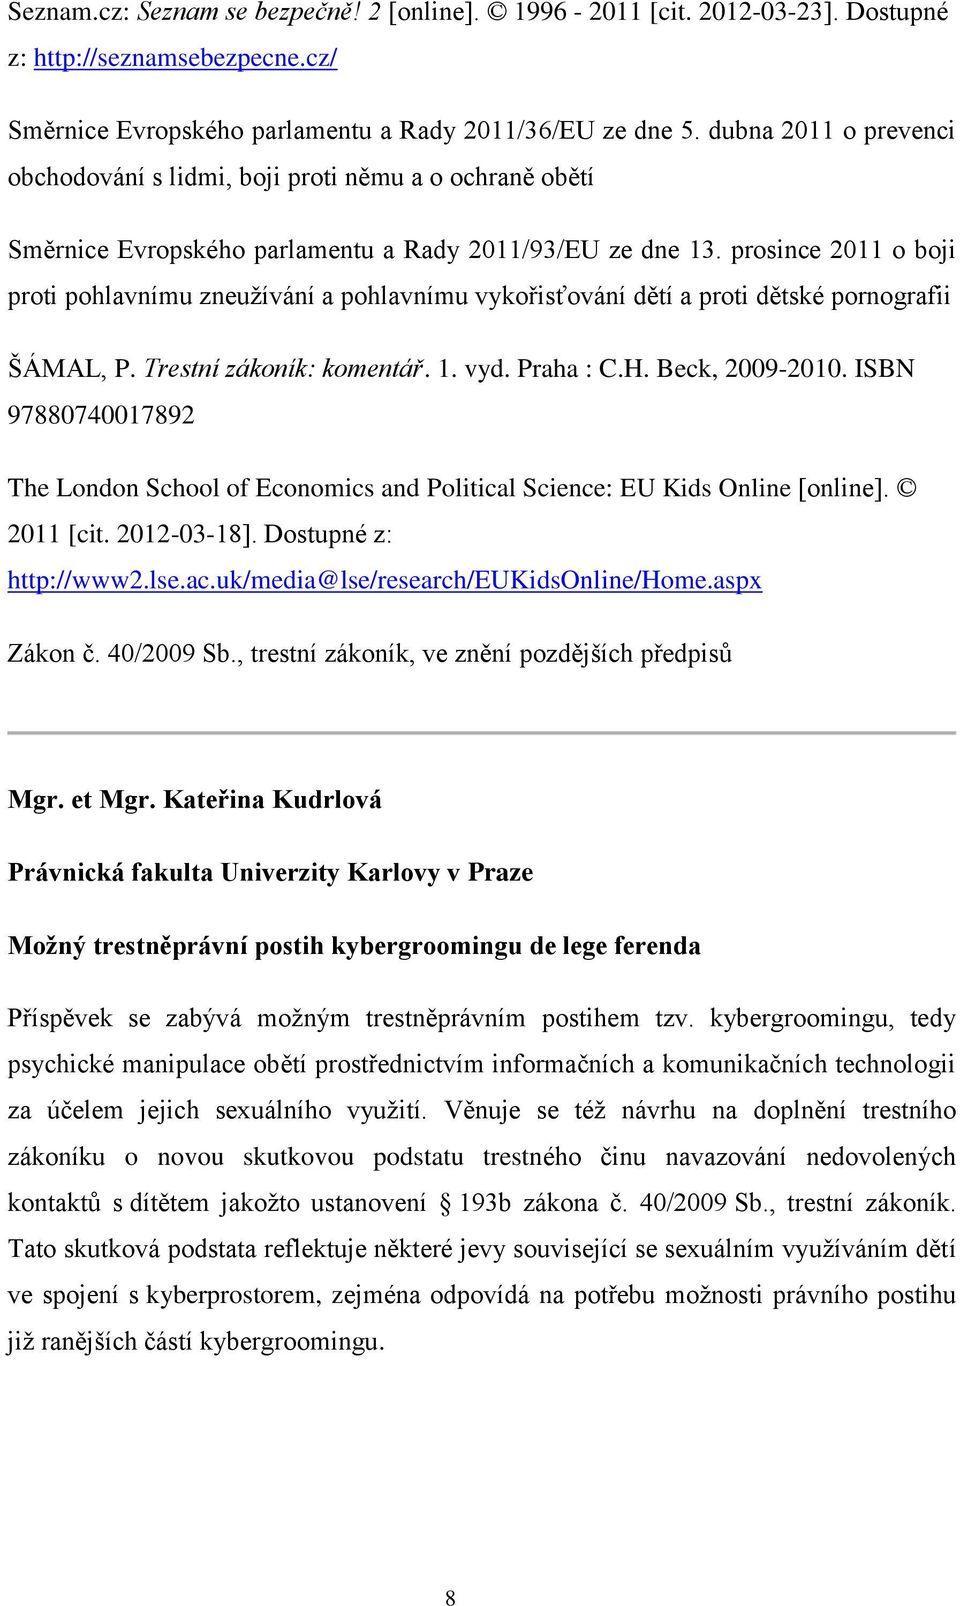 prosince 2011 o boji proti pohlavnímu zneužívání a pohlavnímu vykořisťování dětí a proti dětské pornografii MAL, P. restní zákoník komentář. 1. vyd. Praha : C.H. Beck, 2009-2010.